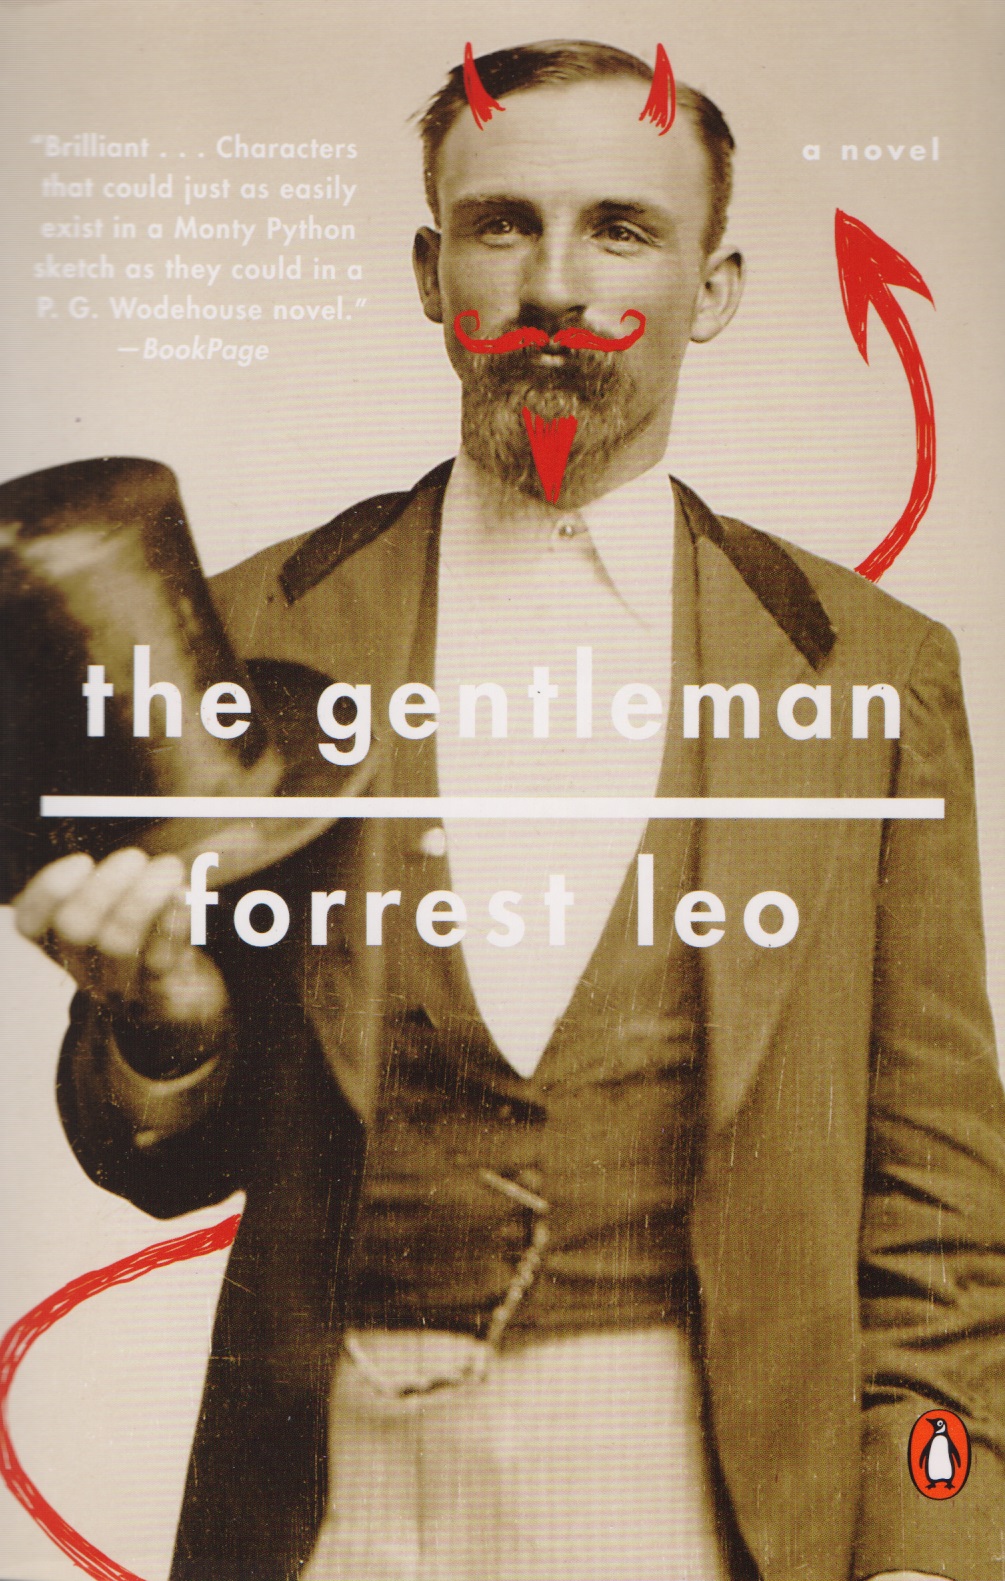 The Gentleman the gentleman